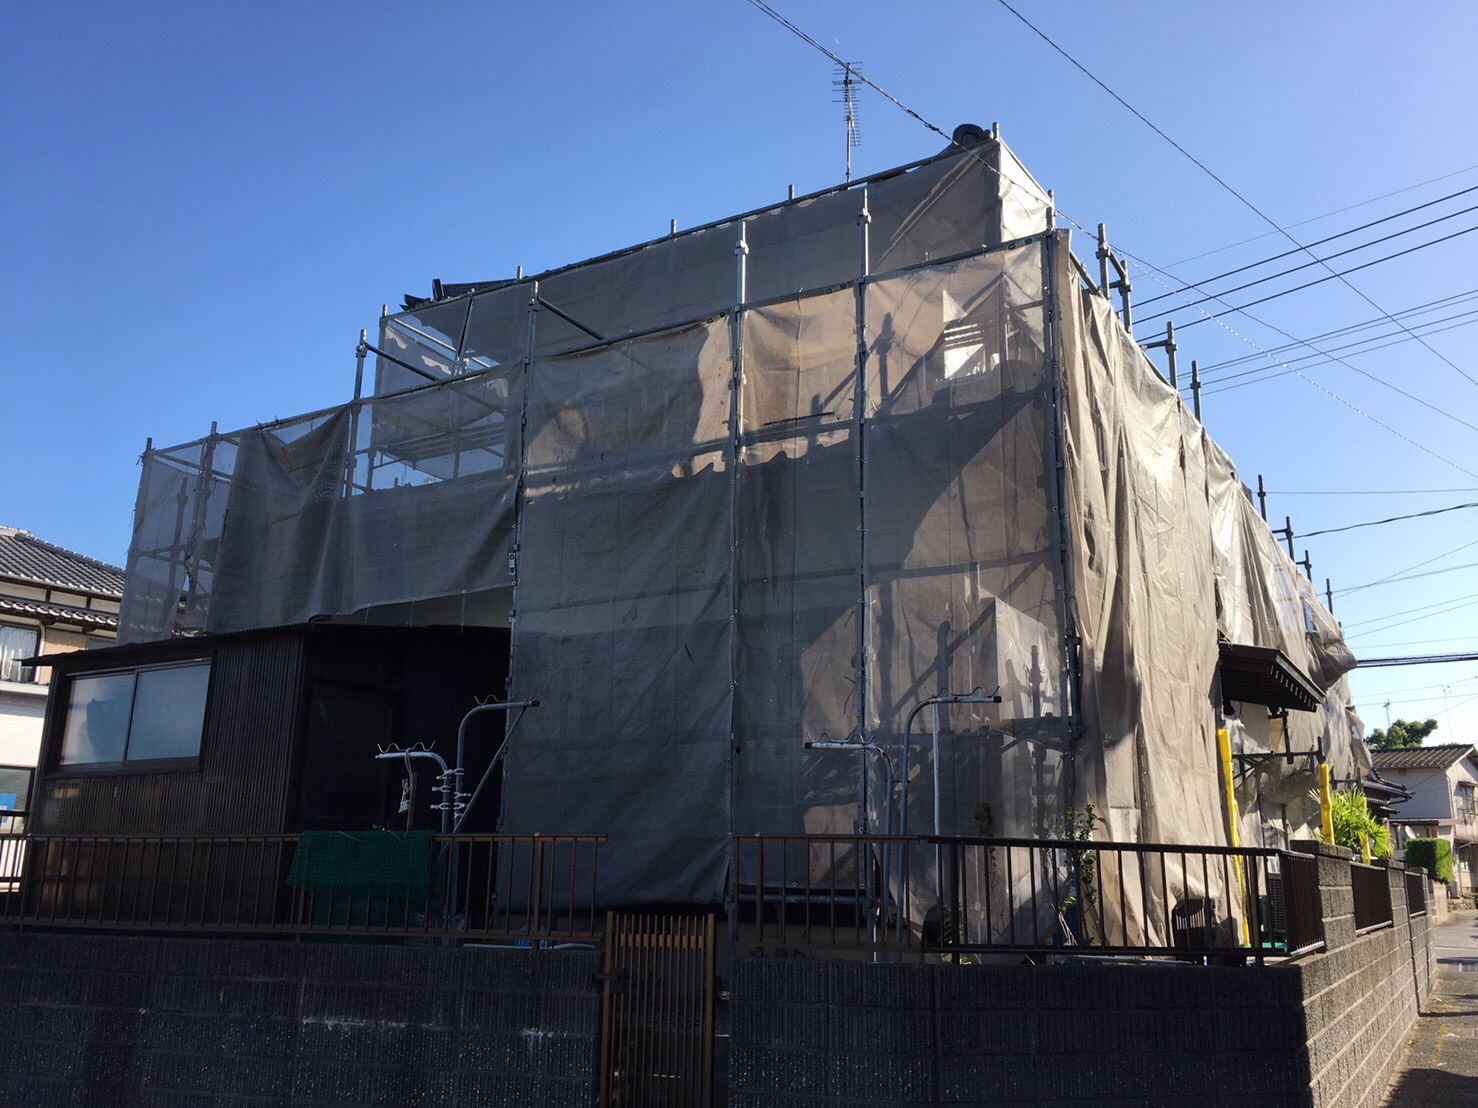 福岡・長崎・熊本の外壁塗装・外壁リフォーム・屋根塗装はアラタナホームズ 「ARaTanaHome's」